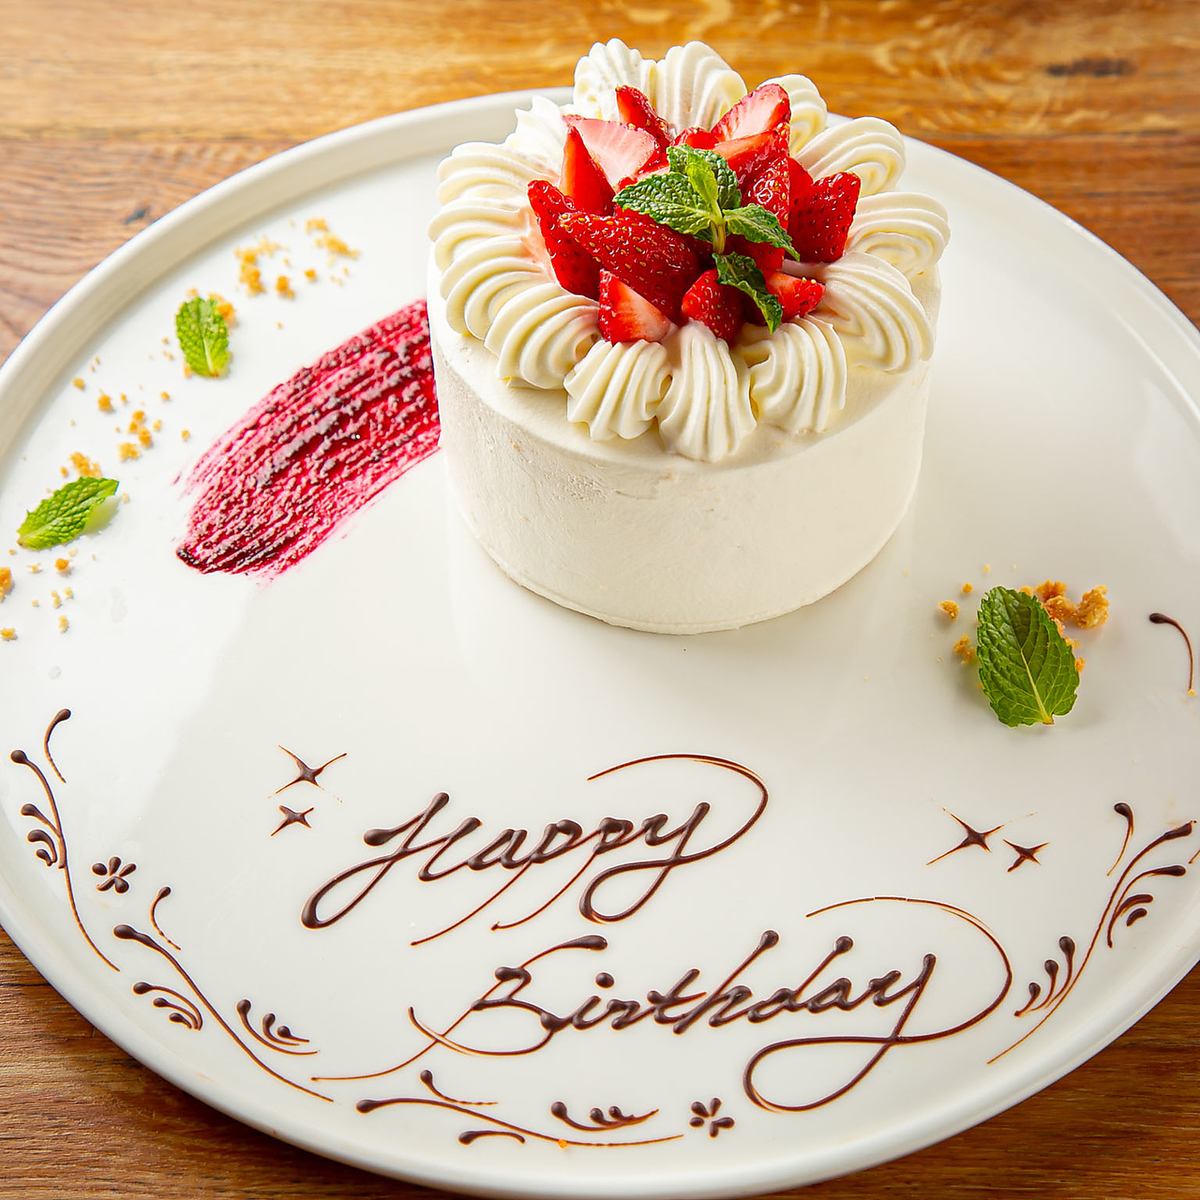 裝飾蛋糕可用於慶祝生日和紀念日。